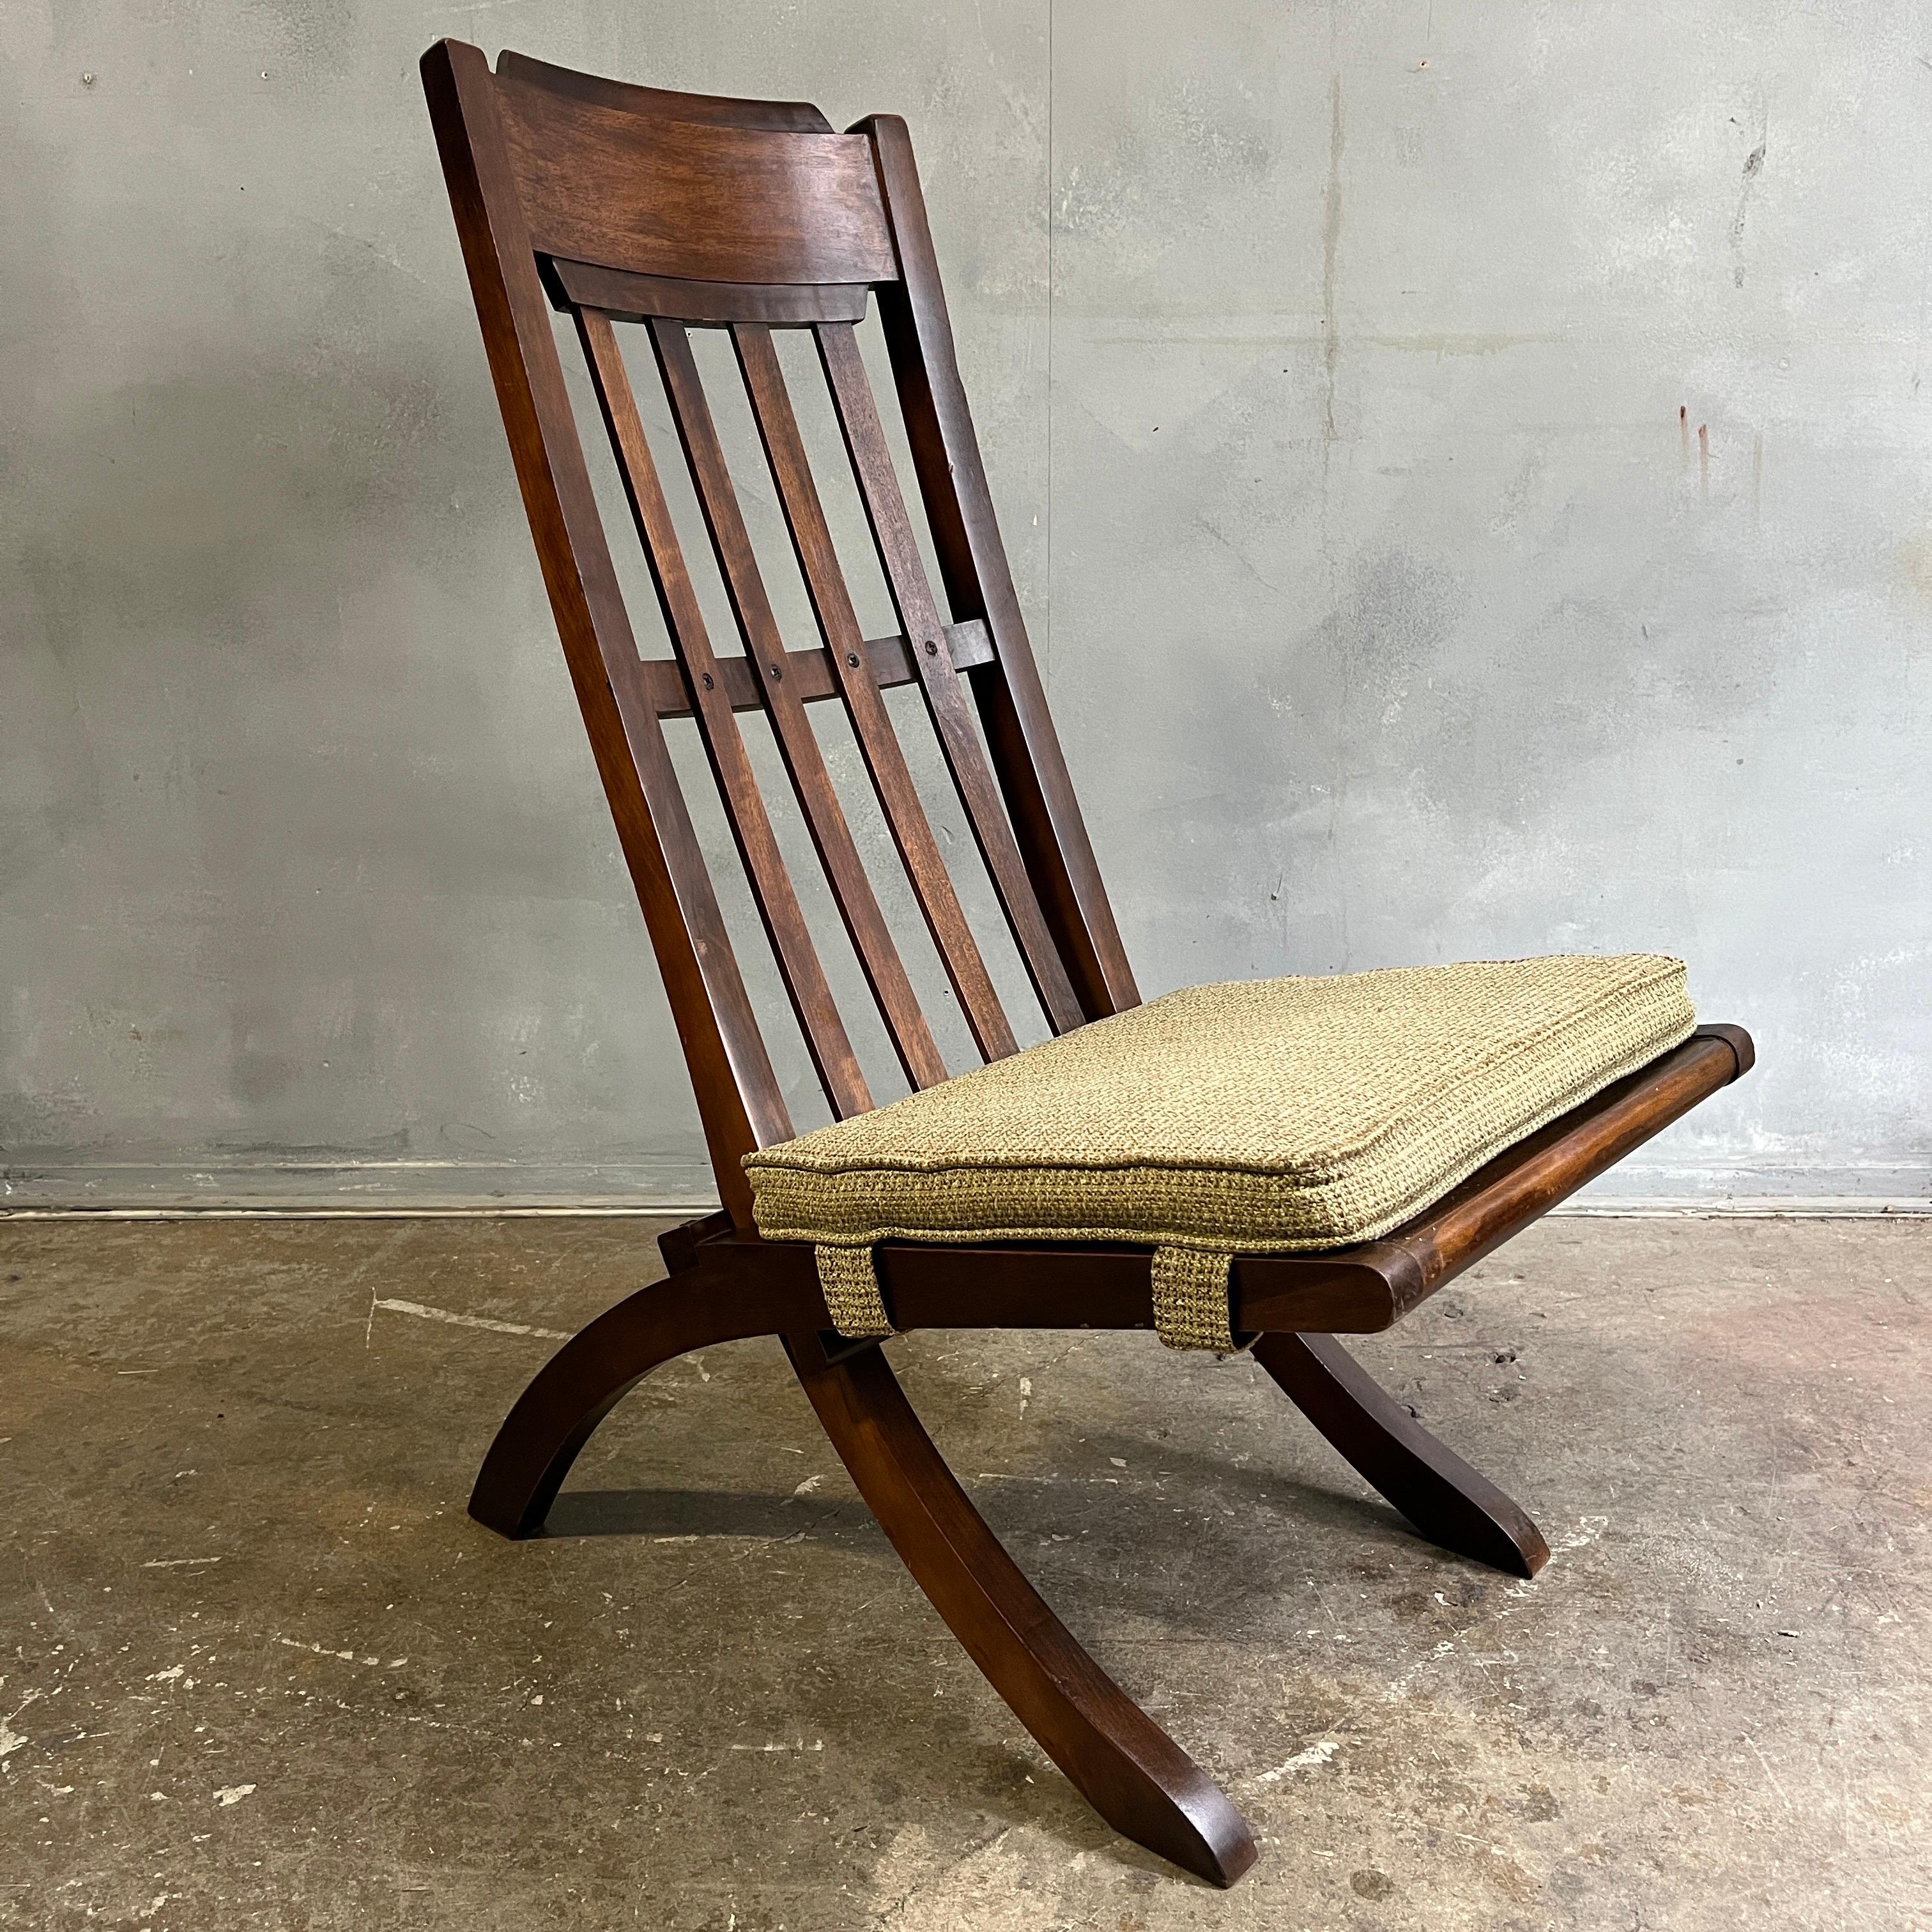 Dieser Sessel Mid-Century Modern aus der Mitte des Jahrhunderts stammt aus der Perspective-Kollektion von Milo Baughman für Drexel aus dem Jahr 1951. Aus exotischem Mindoro-Holz gefertigt, das im Licht schimmert. Dieser Stuhl ist äußerst selten und